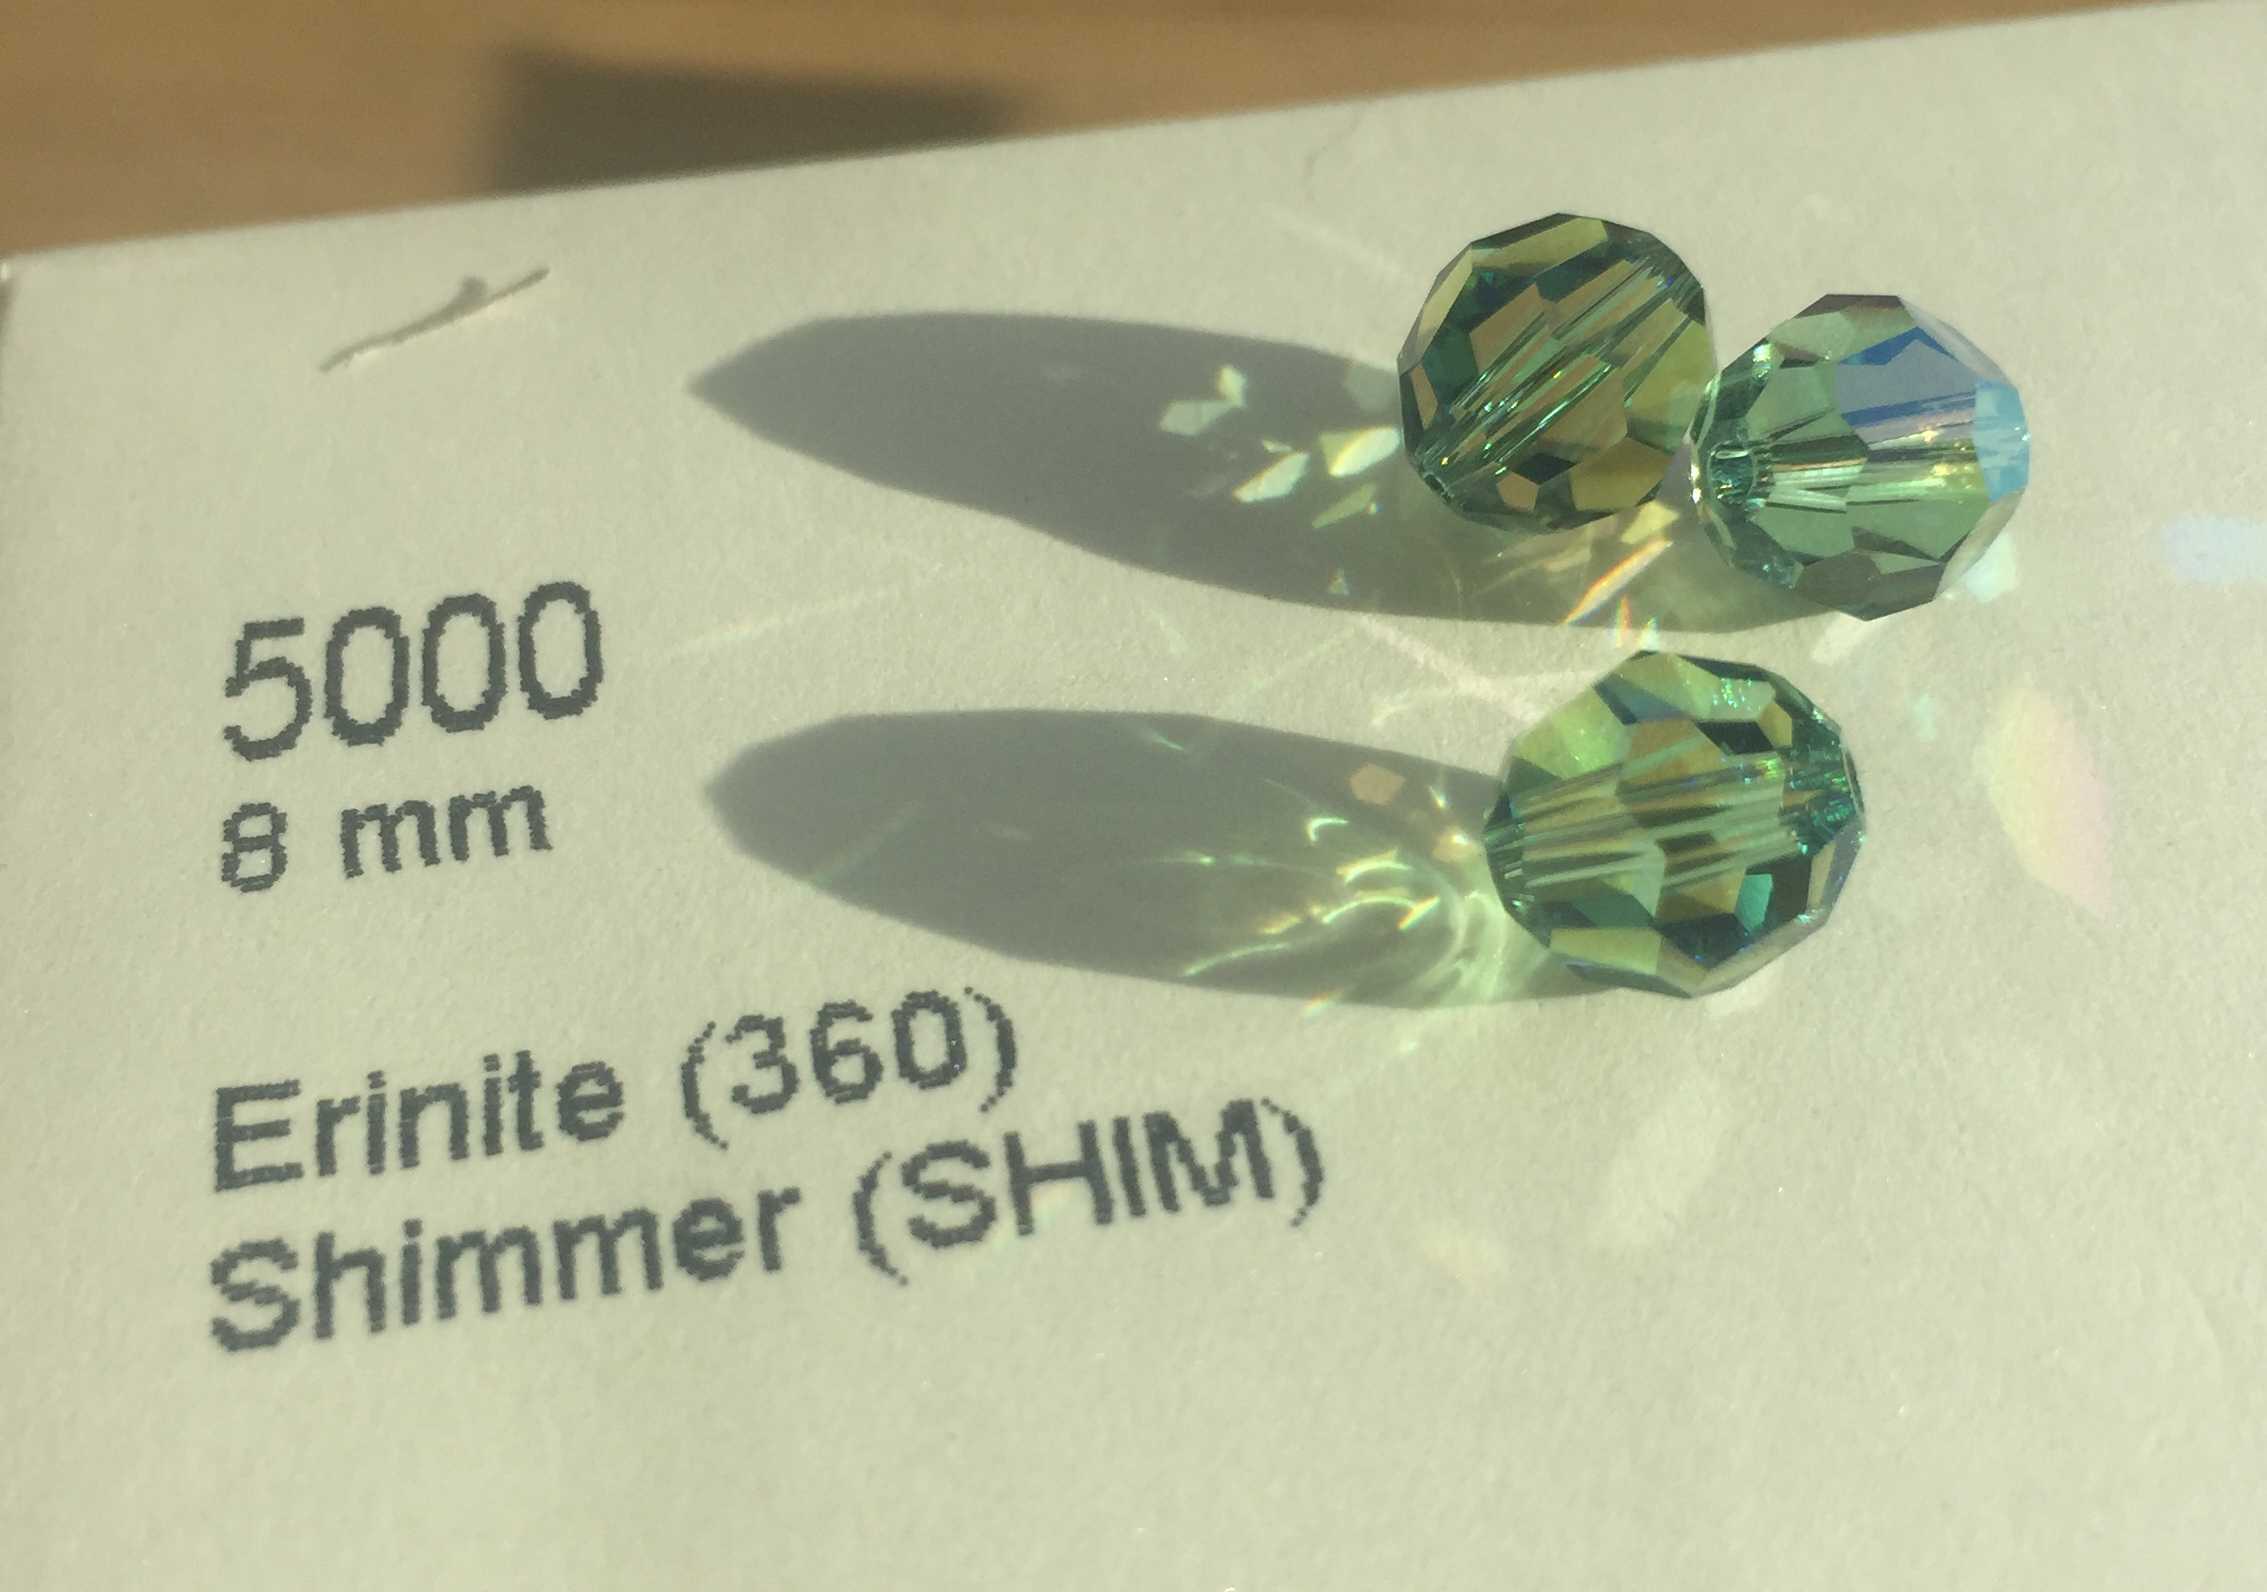 5000 - Erinite Shimmer (360SHIM) - 8mm